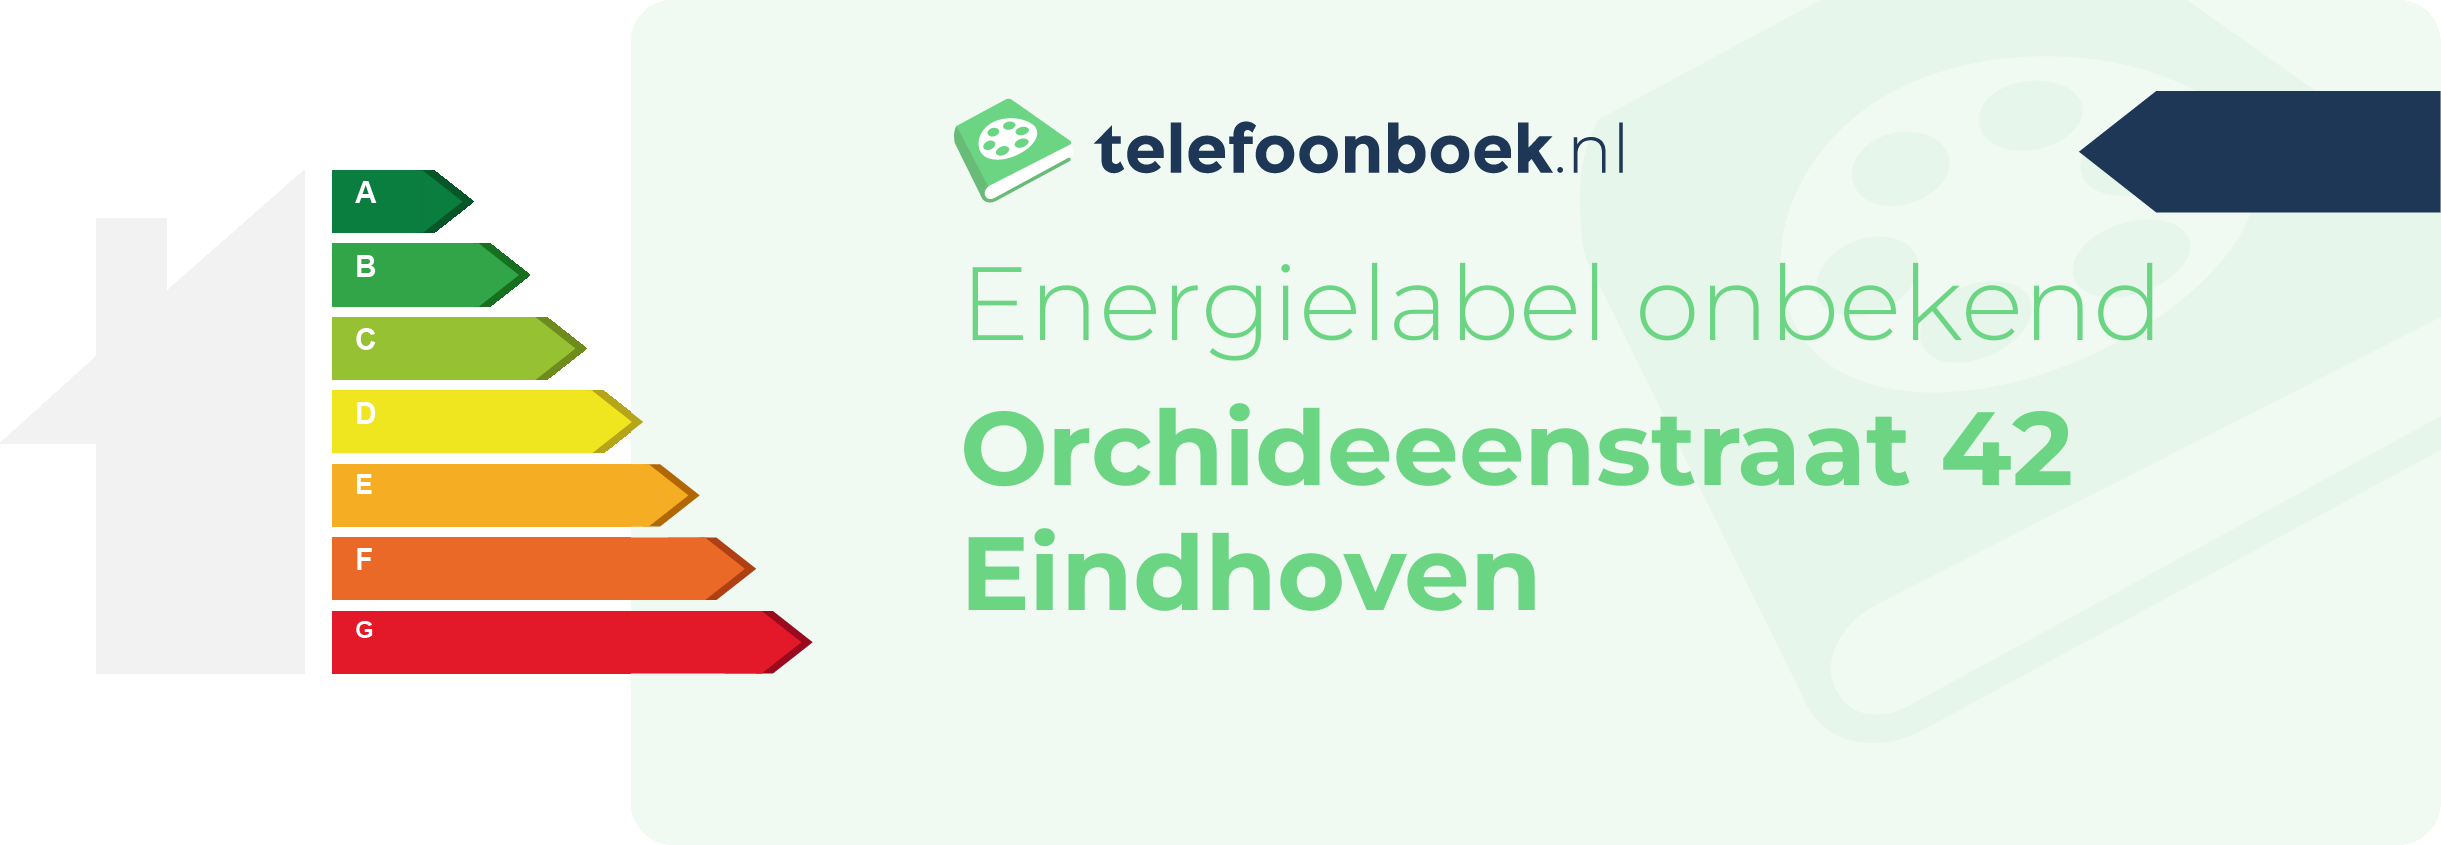 Energielabel Orchideeenstraat 42 Eindhoven